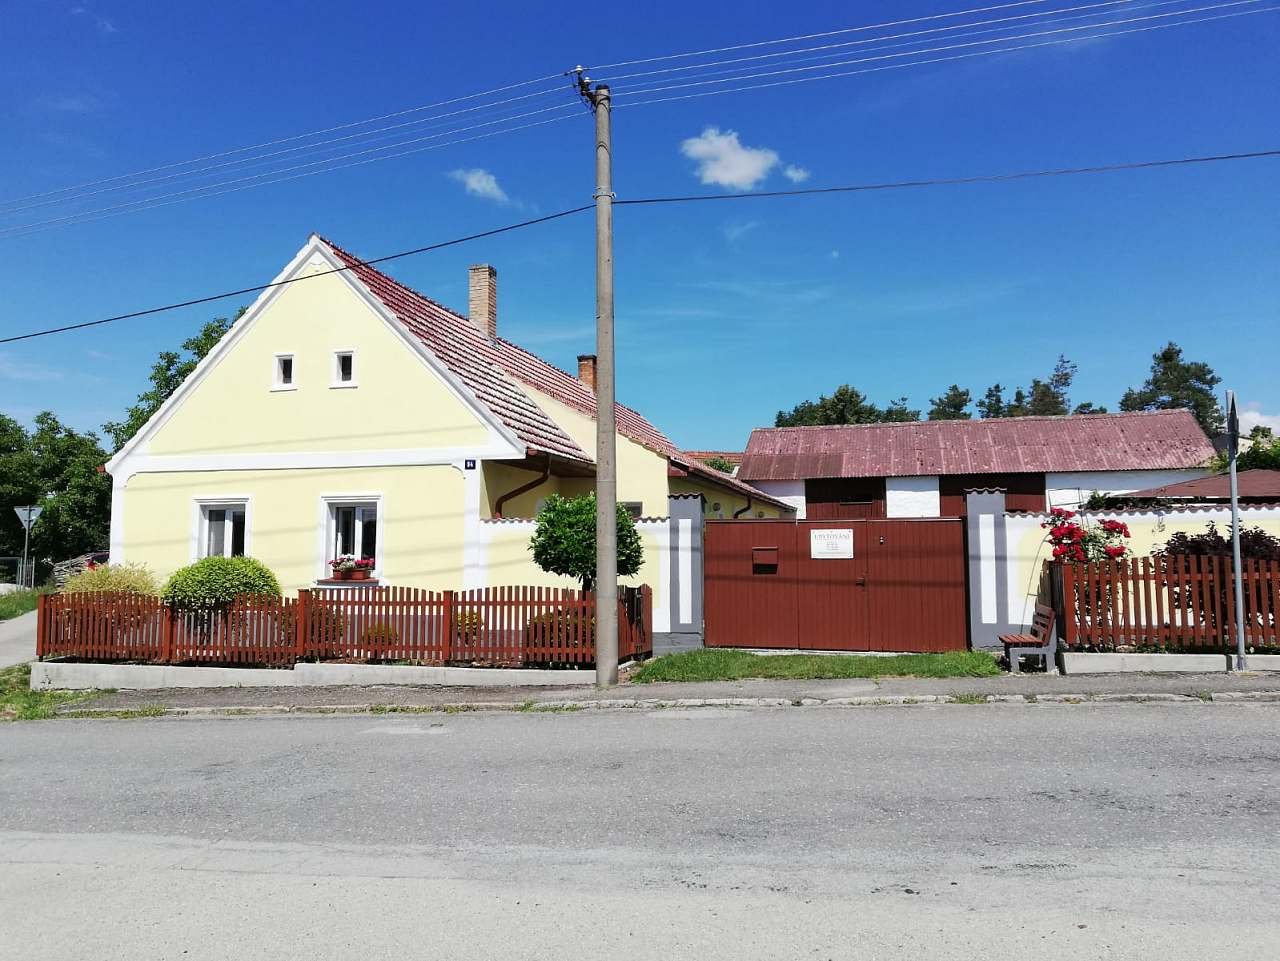 Quang cảnh toàn bộ ngôi nhà với căn hộ Stříbřec 94